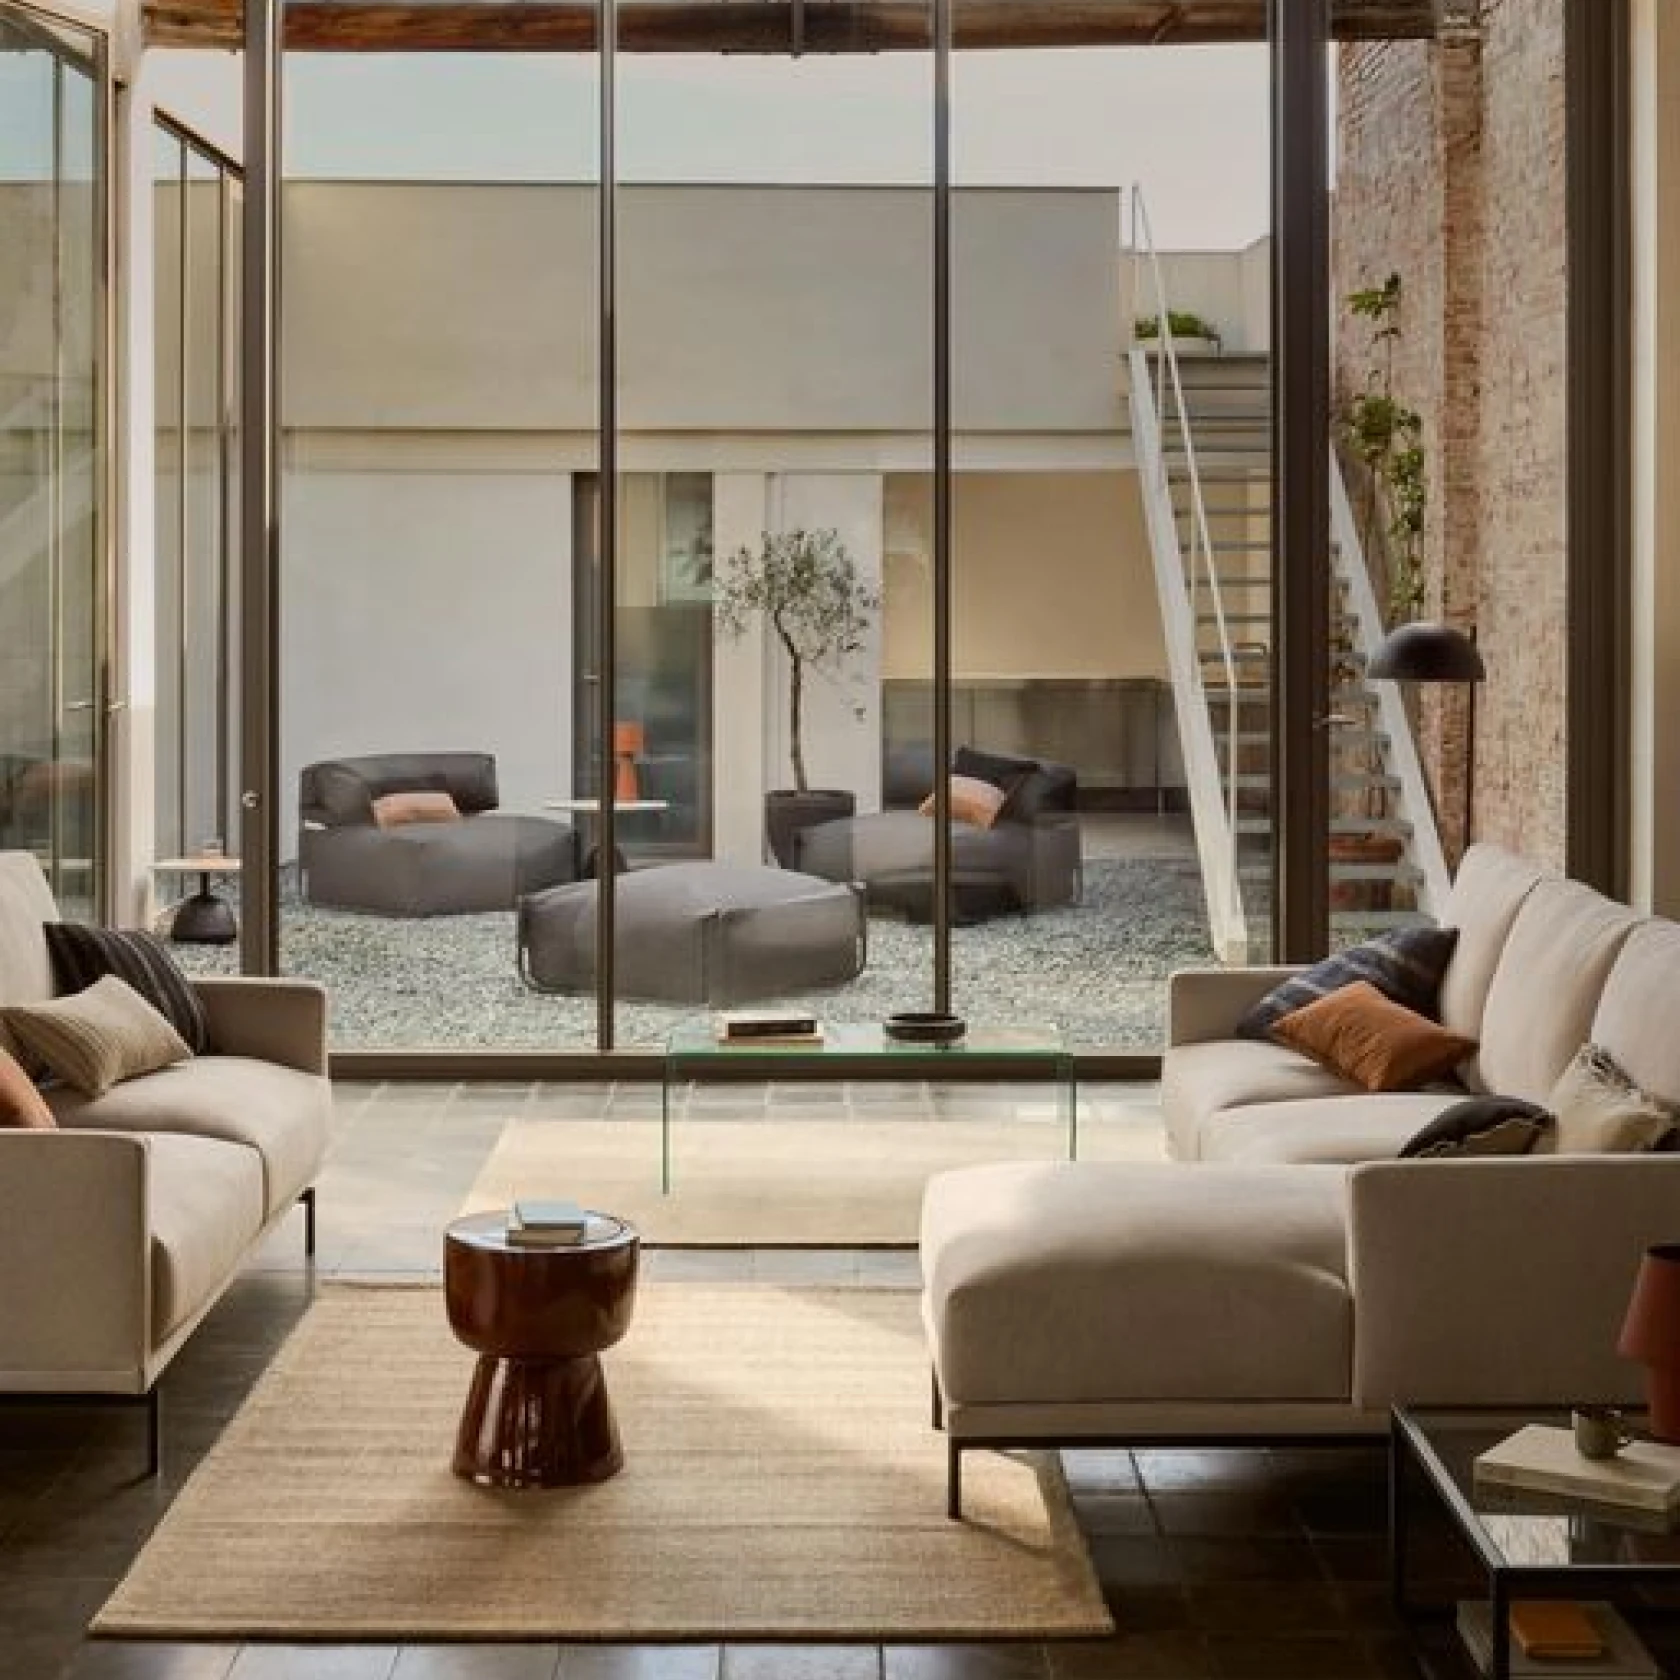 Sala de estar con sofás crema mirando a través de ventanas de piso a techo hacia el patio con muebles de descanso al aire libre